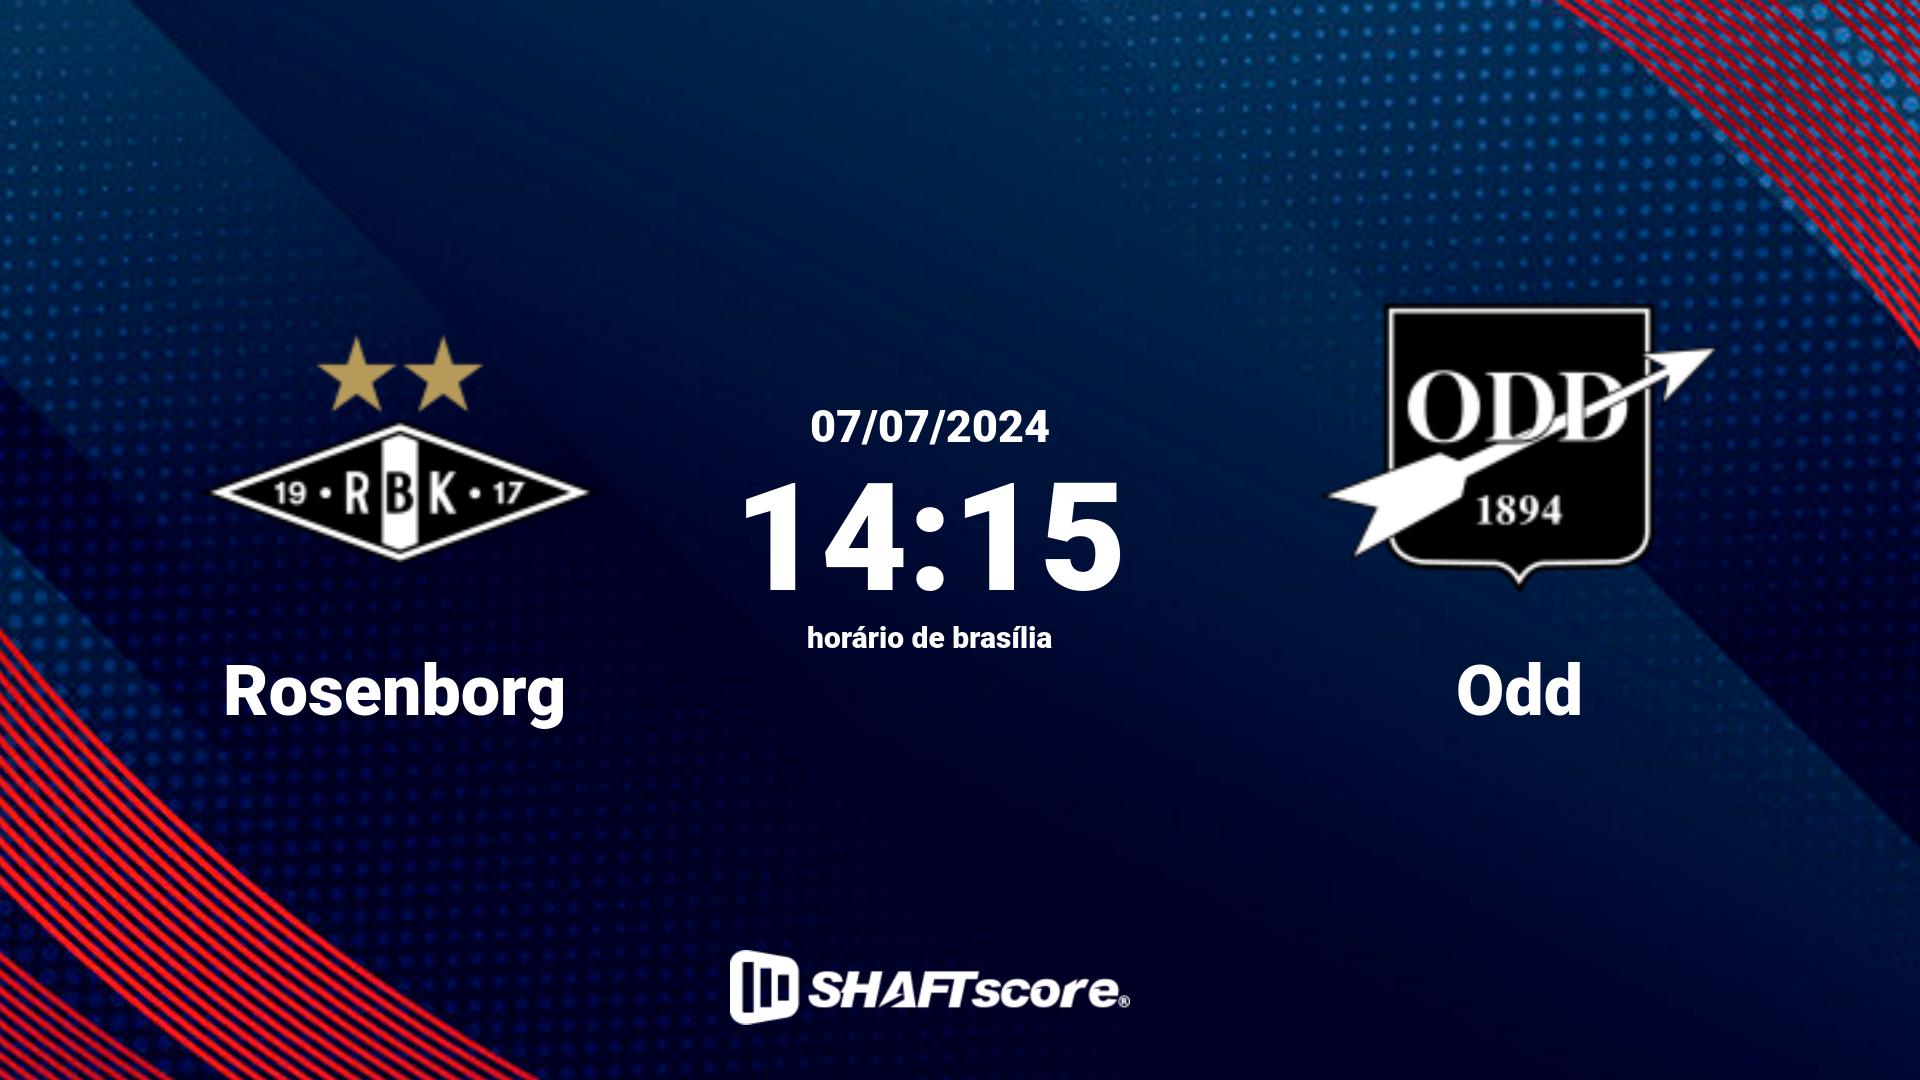 Estatísticas do jogo Rosenborg vs Odd 07.07 14:15